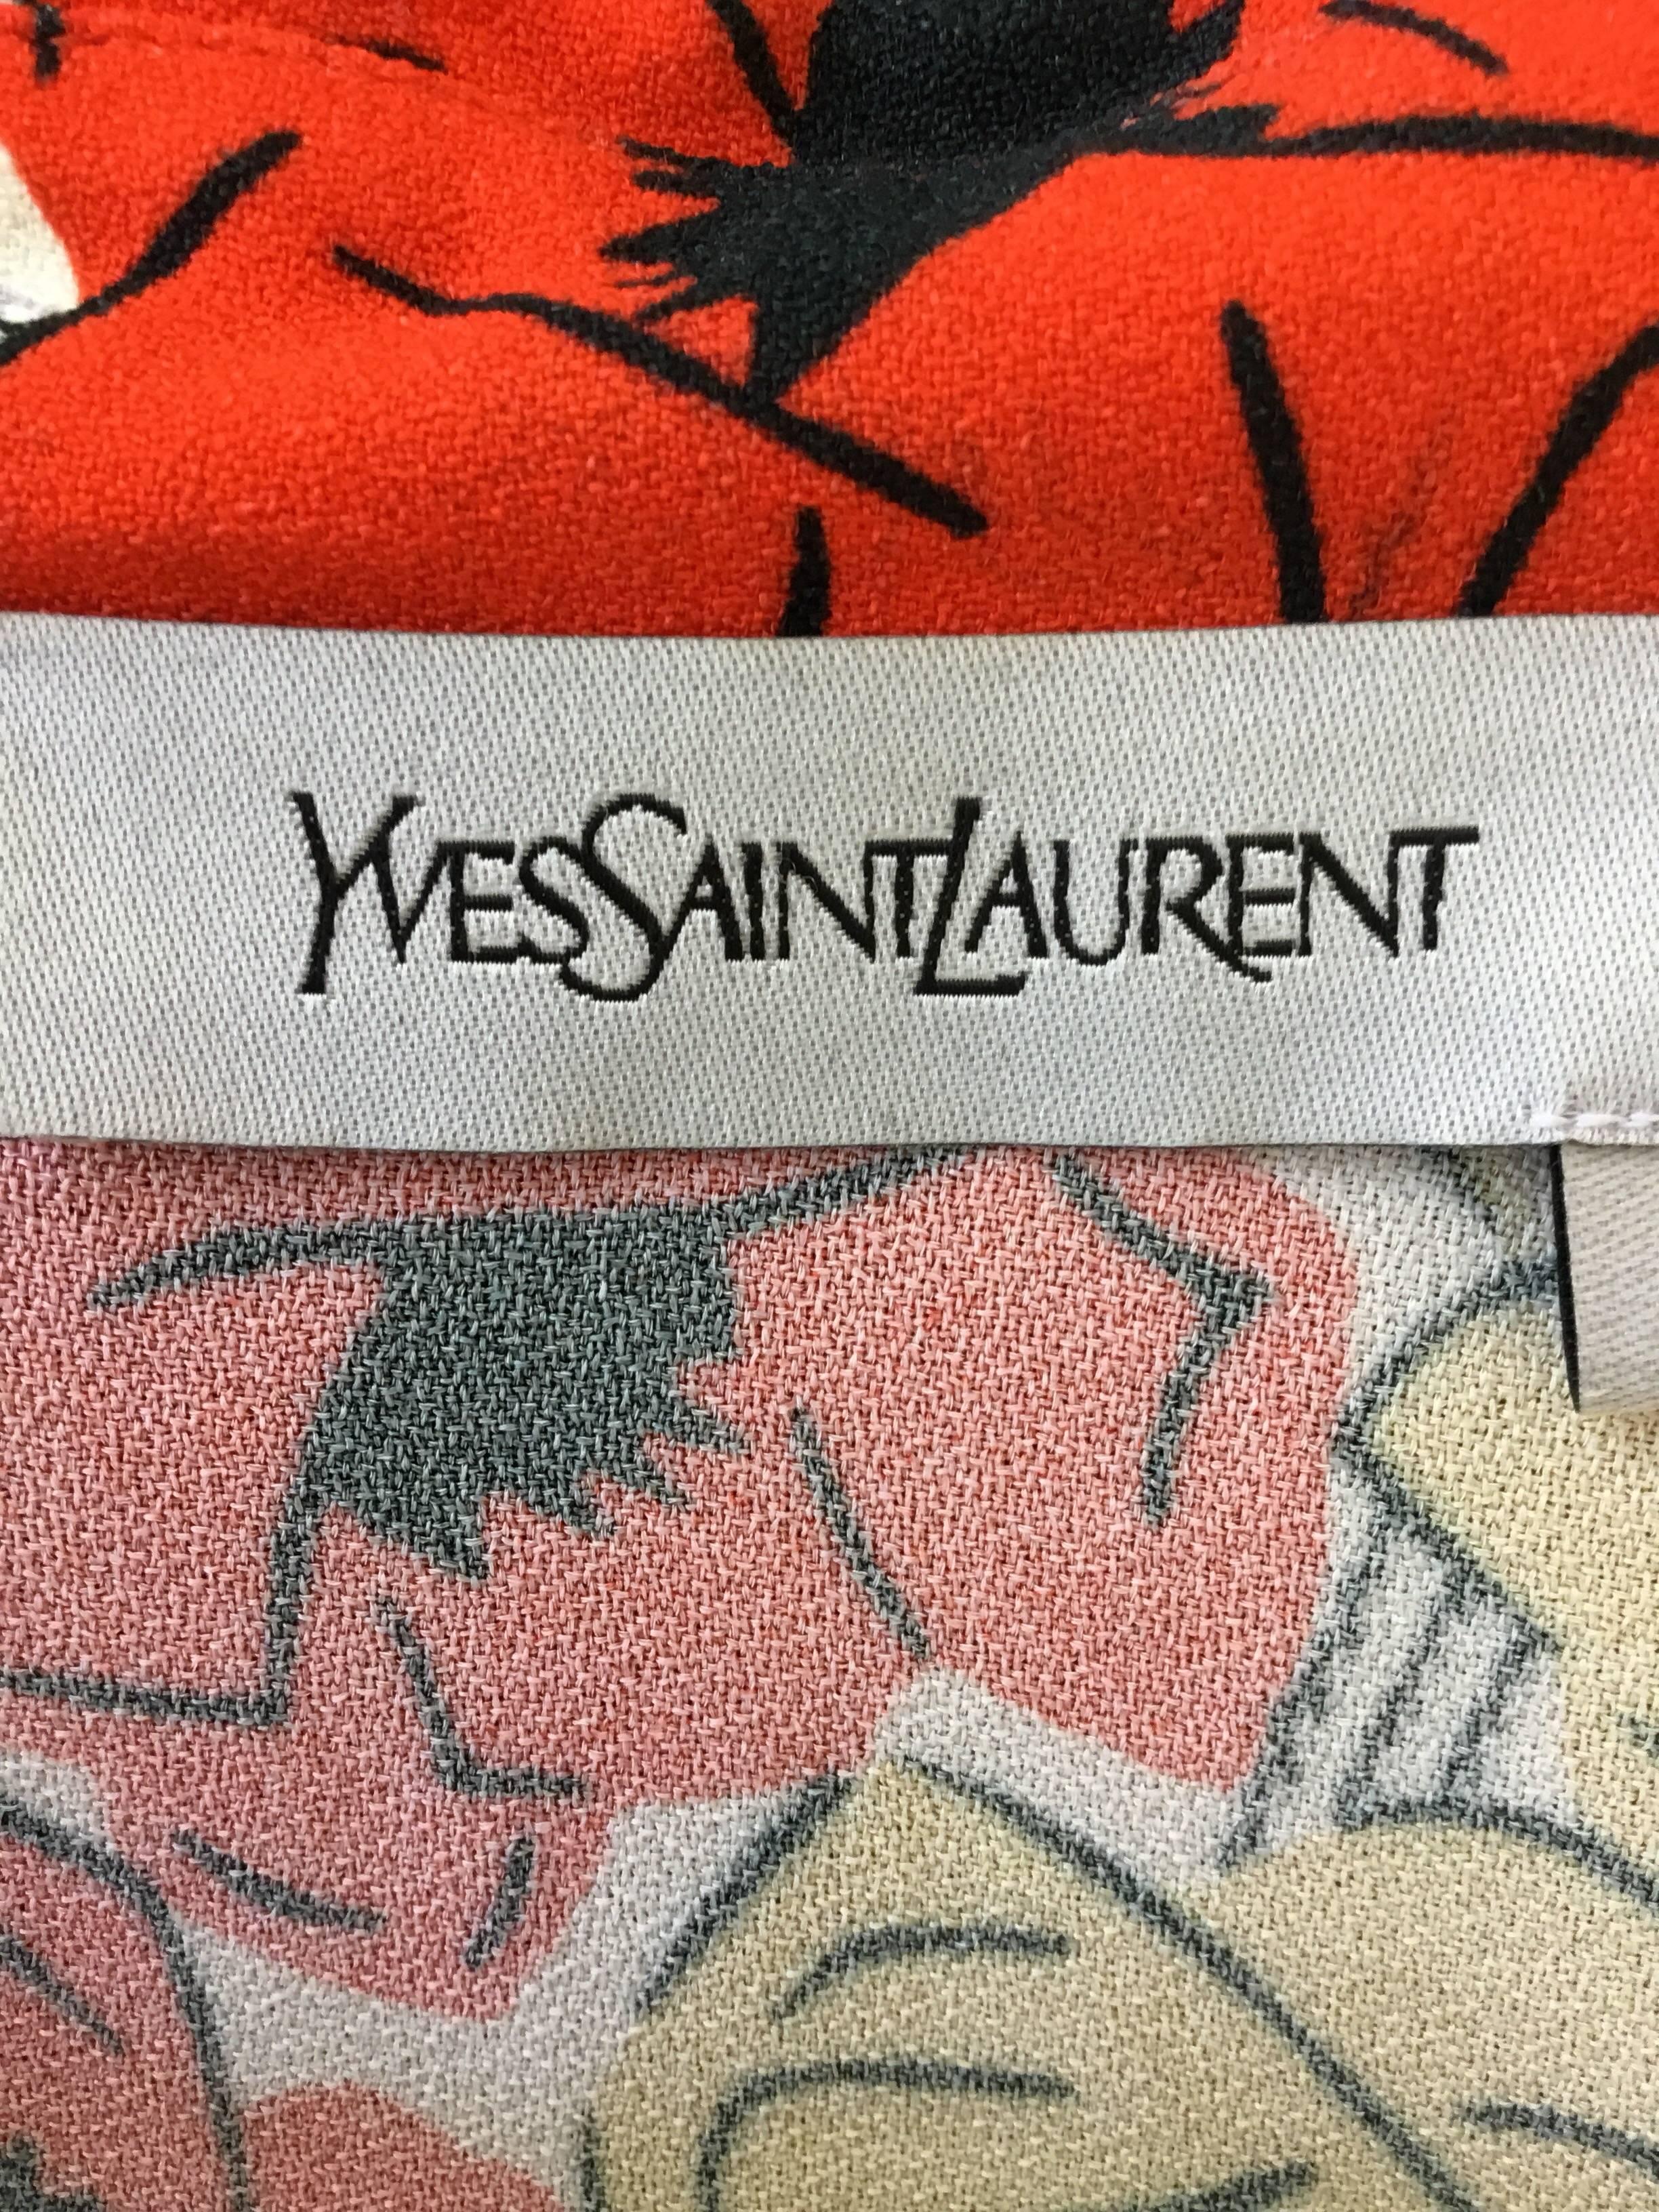 Yves Saint Laurent Print Button up Blouse 1